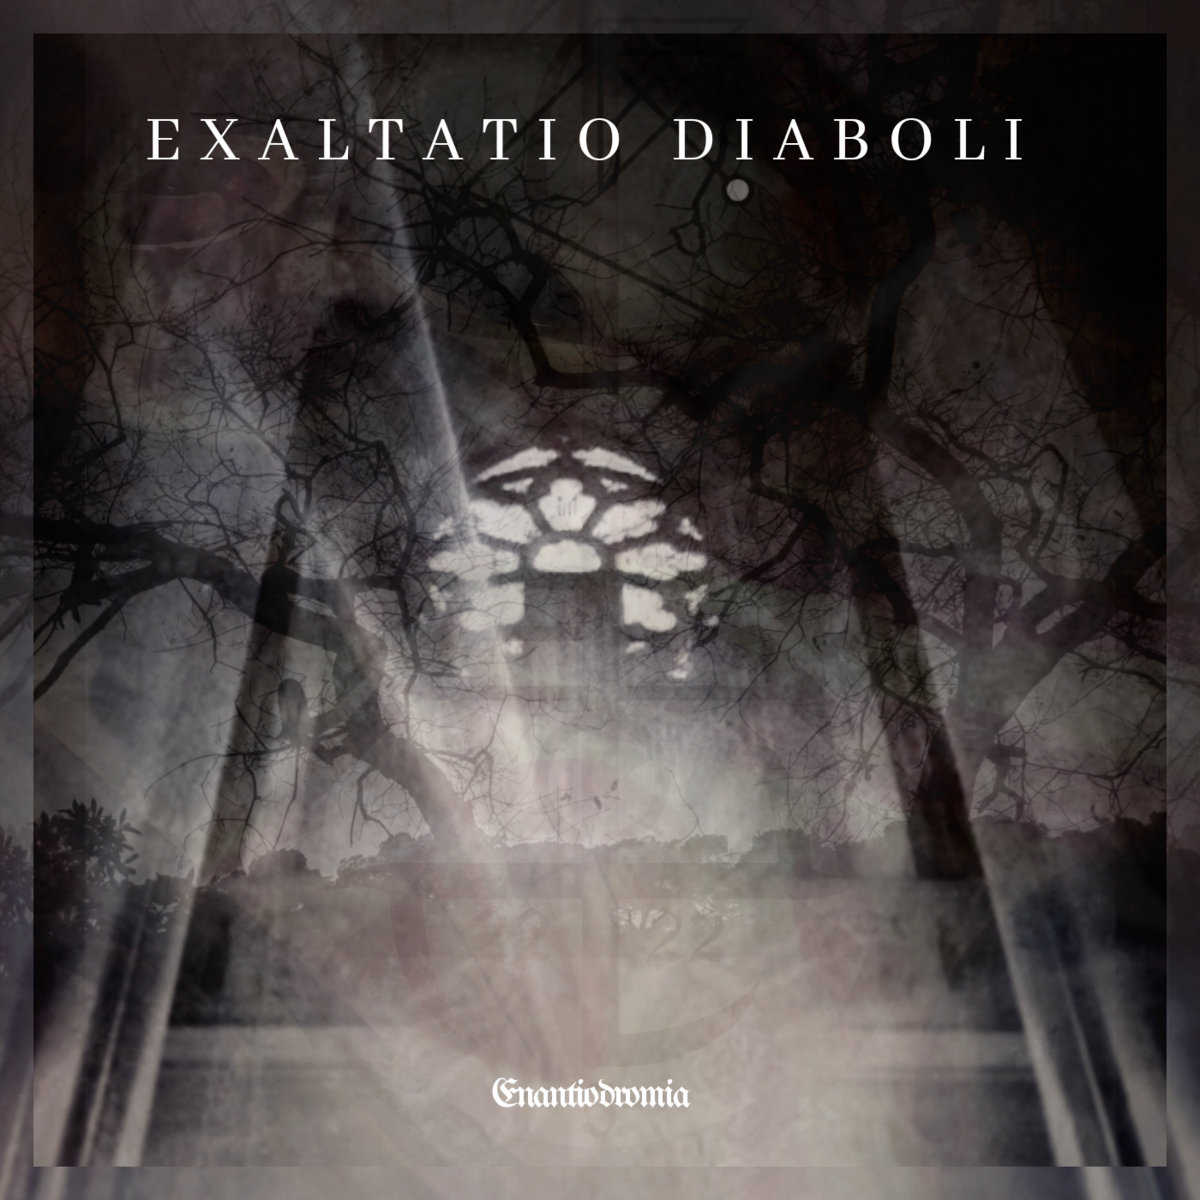 Exaltatio Diaboli - Enantiodromia (2019)